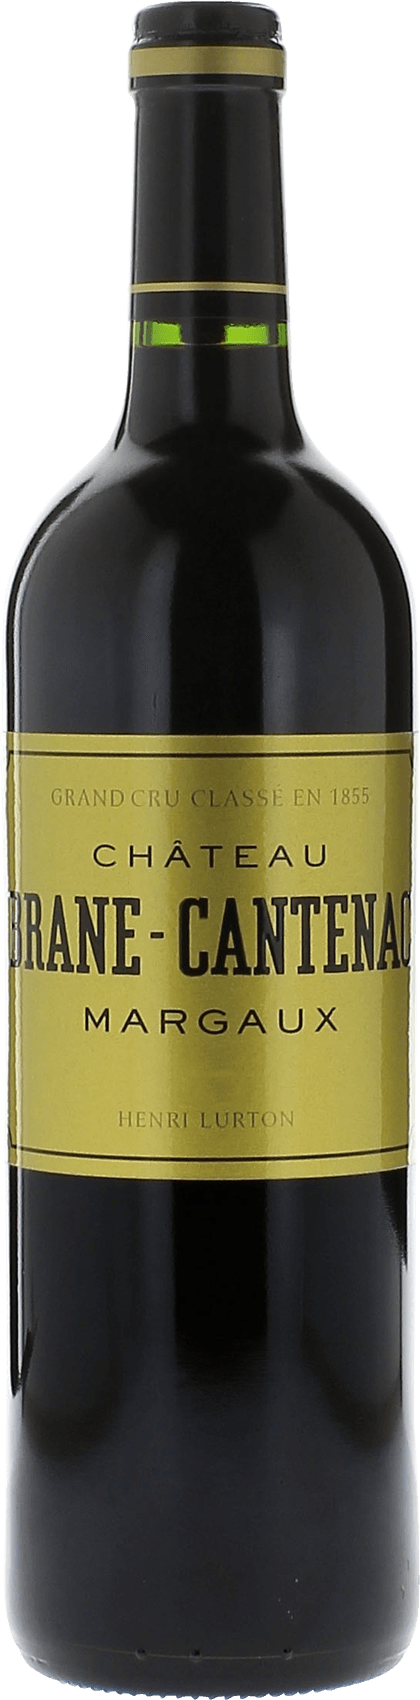 Brane cantenac 1996 2me Grand cru class Margaux, Bordeaux rouge